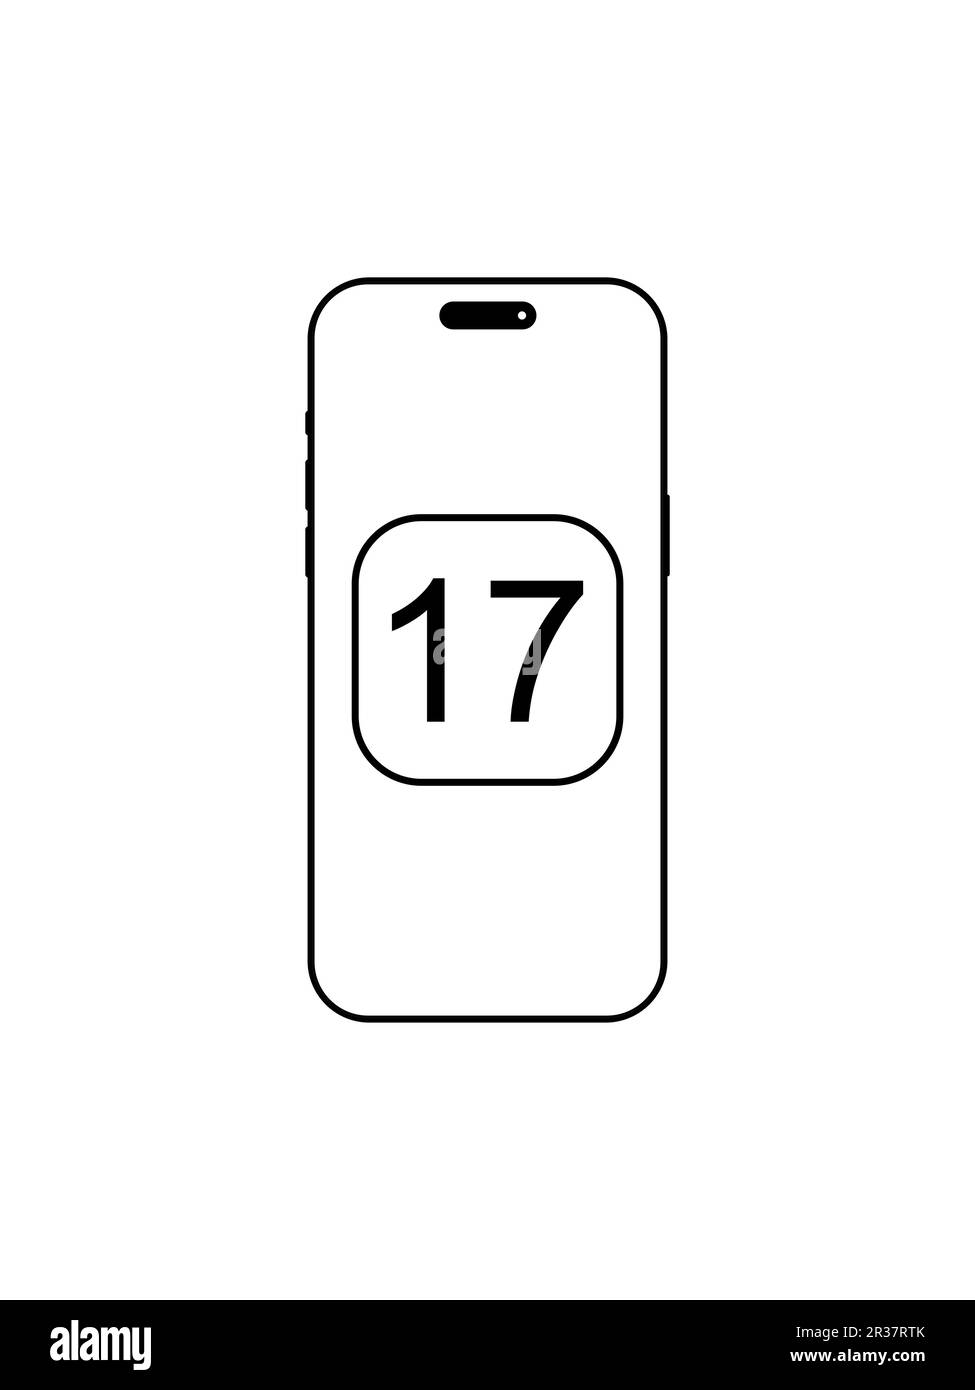 Sistema operativo iOS versione 17 sullo schermo dell'iPhone, ultimo aggiornamento software. Cupertino, Stati Uniti d'America - Maggio 22 2023. Illustrazione Vettoriale